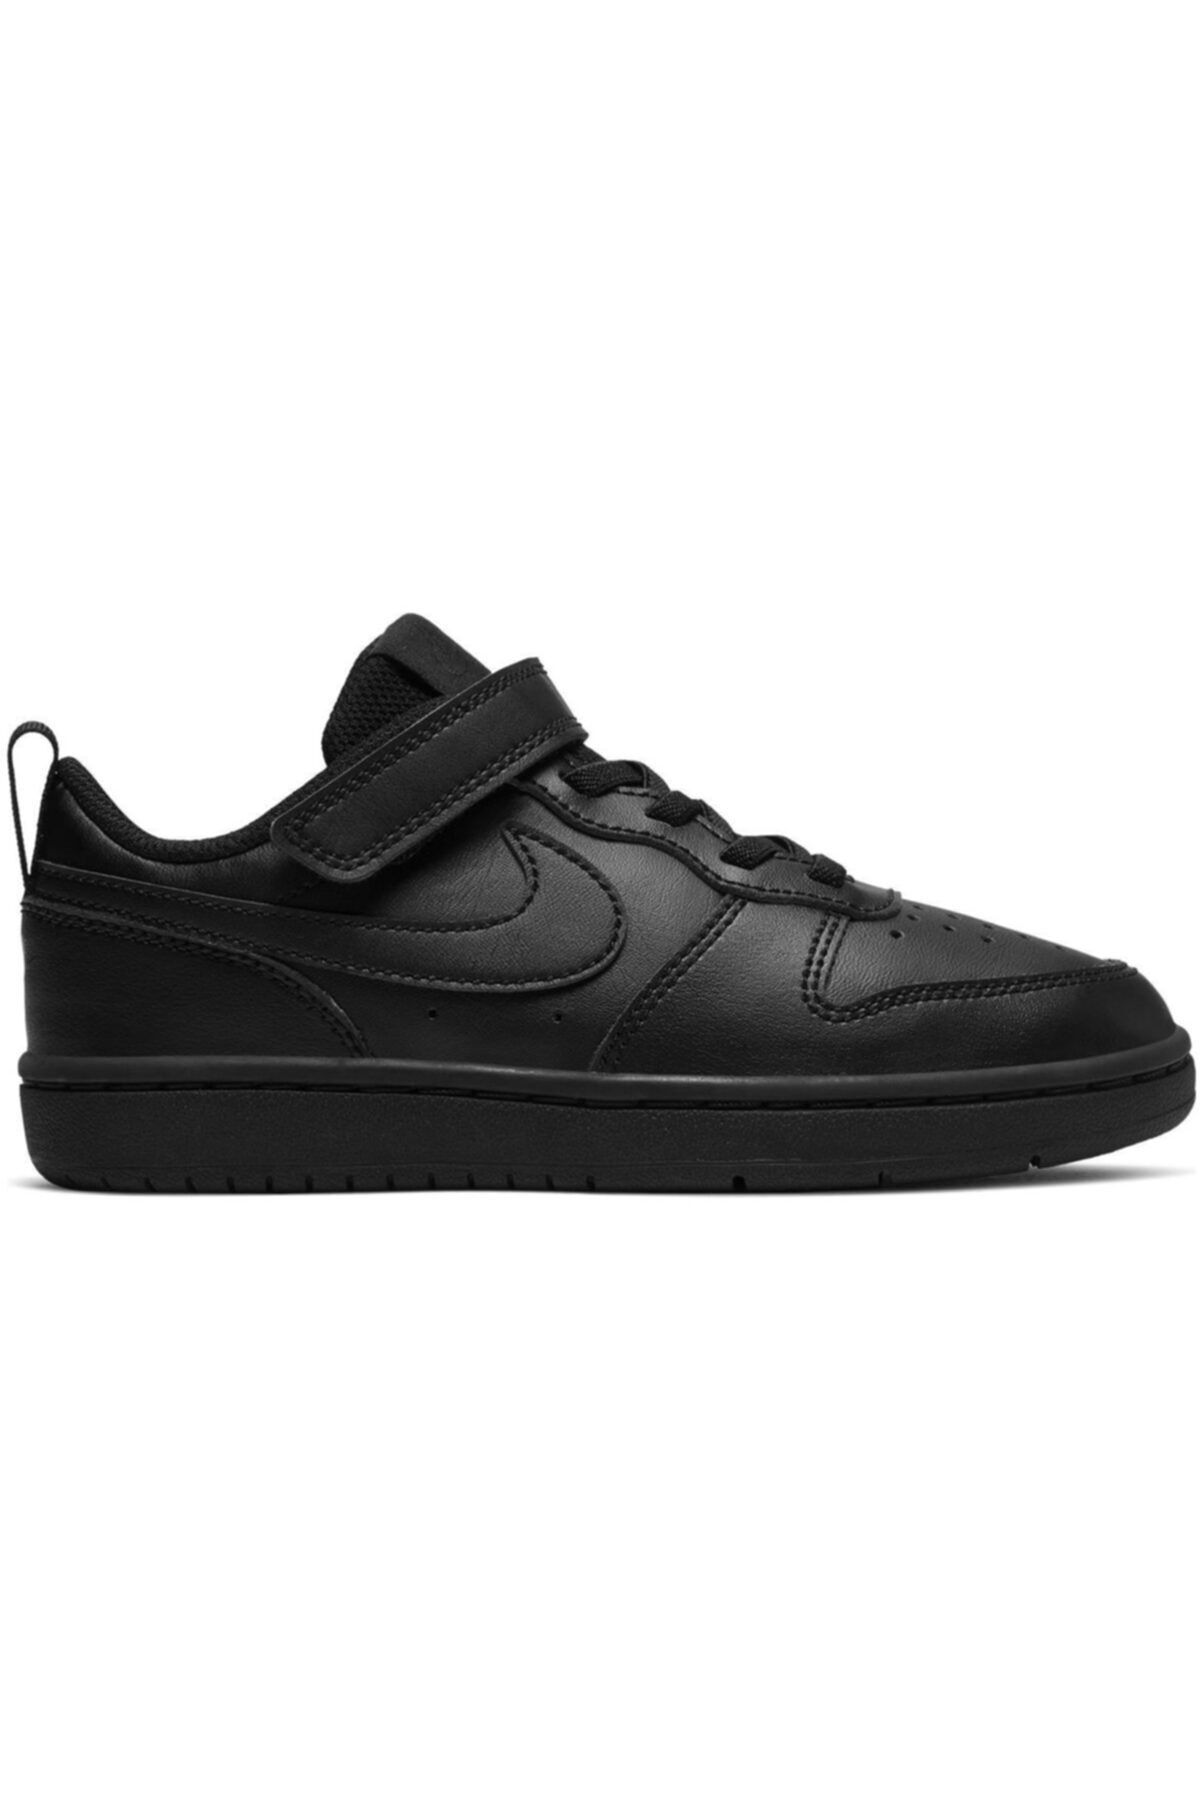 Nike Unisex Çocuk Siyah Bq5451-001 Court Borough Spor Ayakkabı